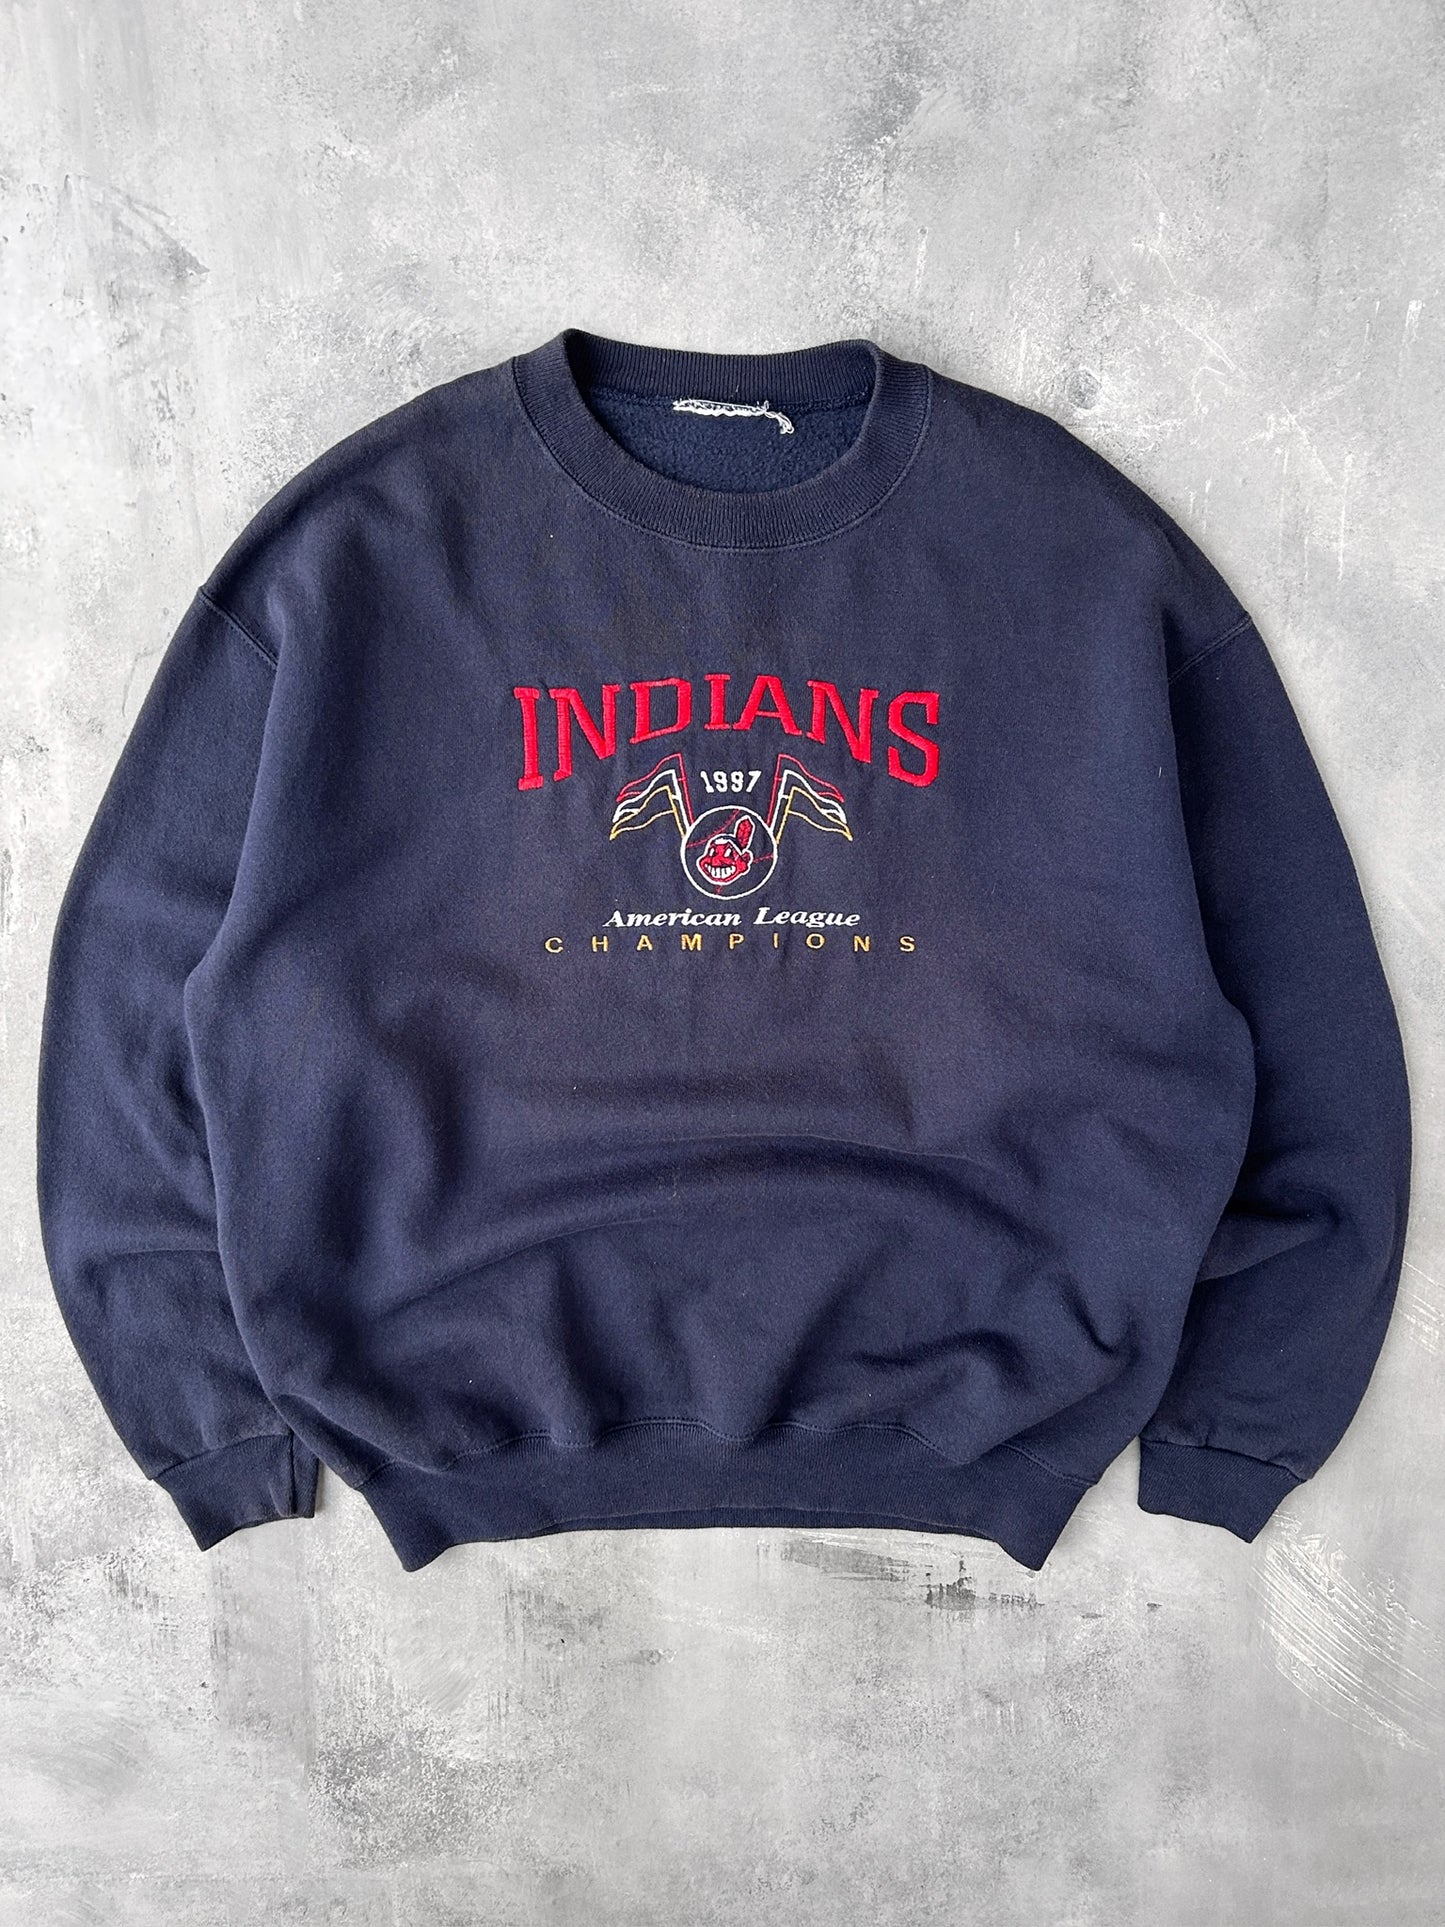 Cleveland Indians Sweatshirt '97 - Large